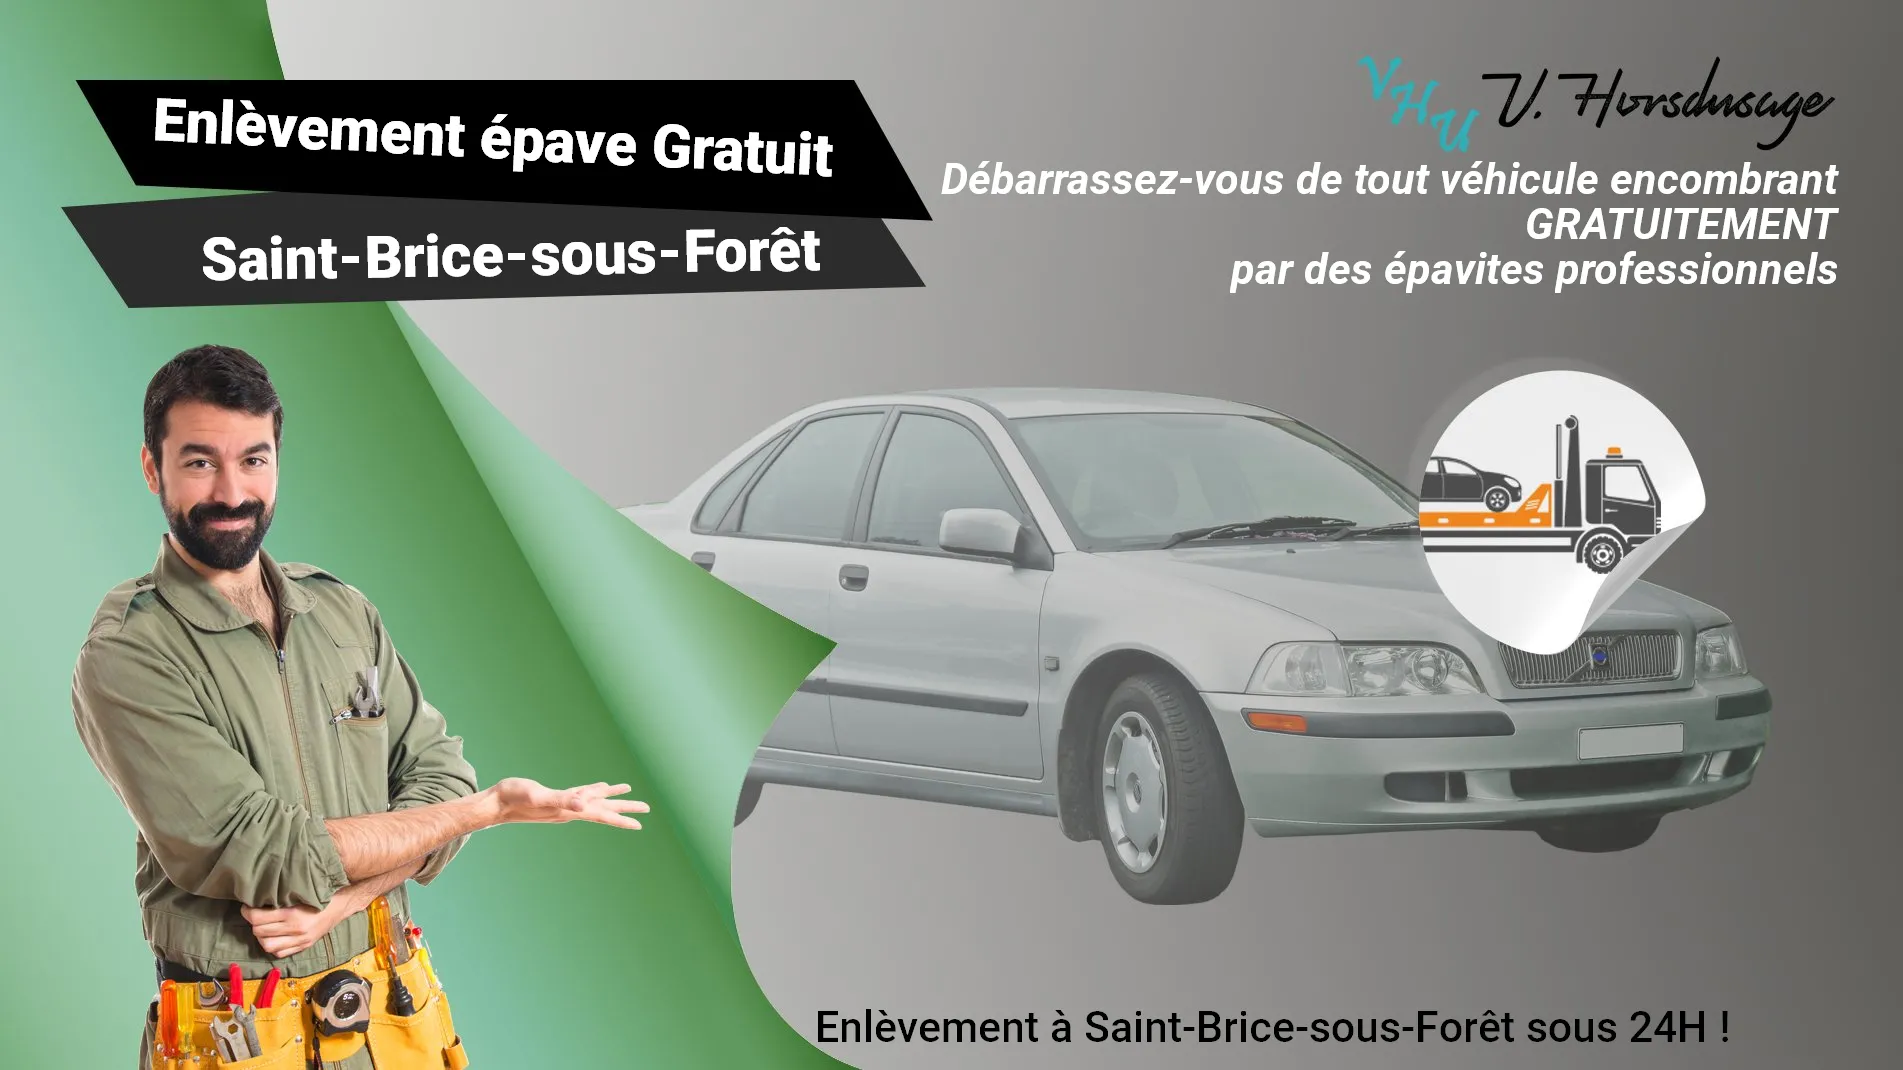 Pour un enlèvement gratuit à Saint-Brice-sous-Forêt, contactez nos épavistes agréé VHU